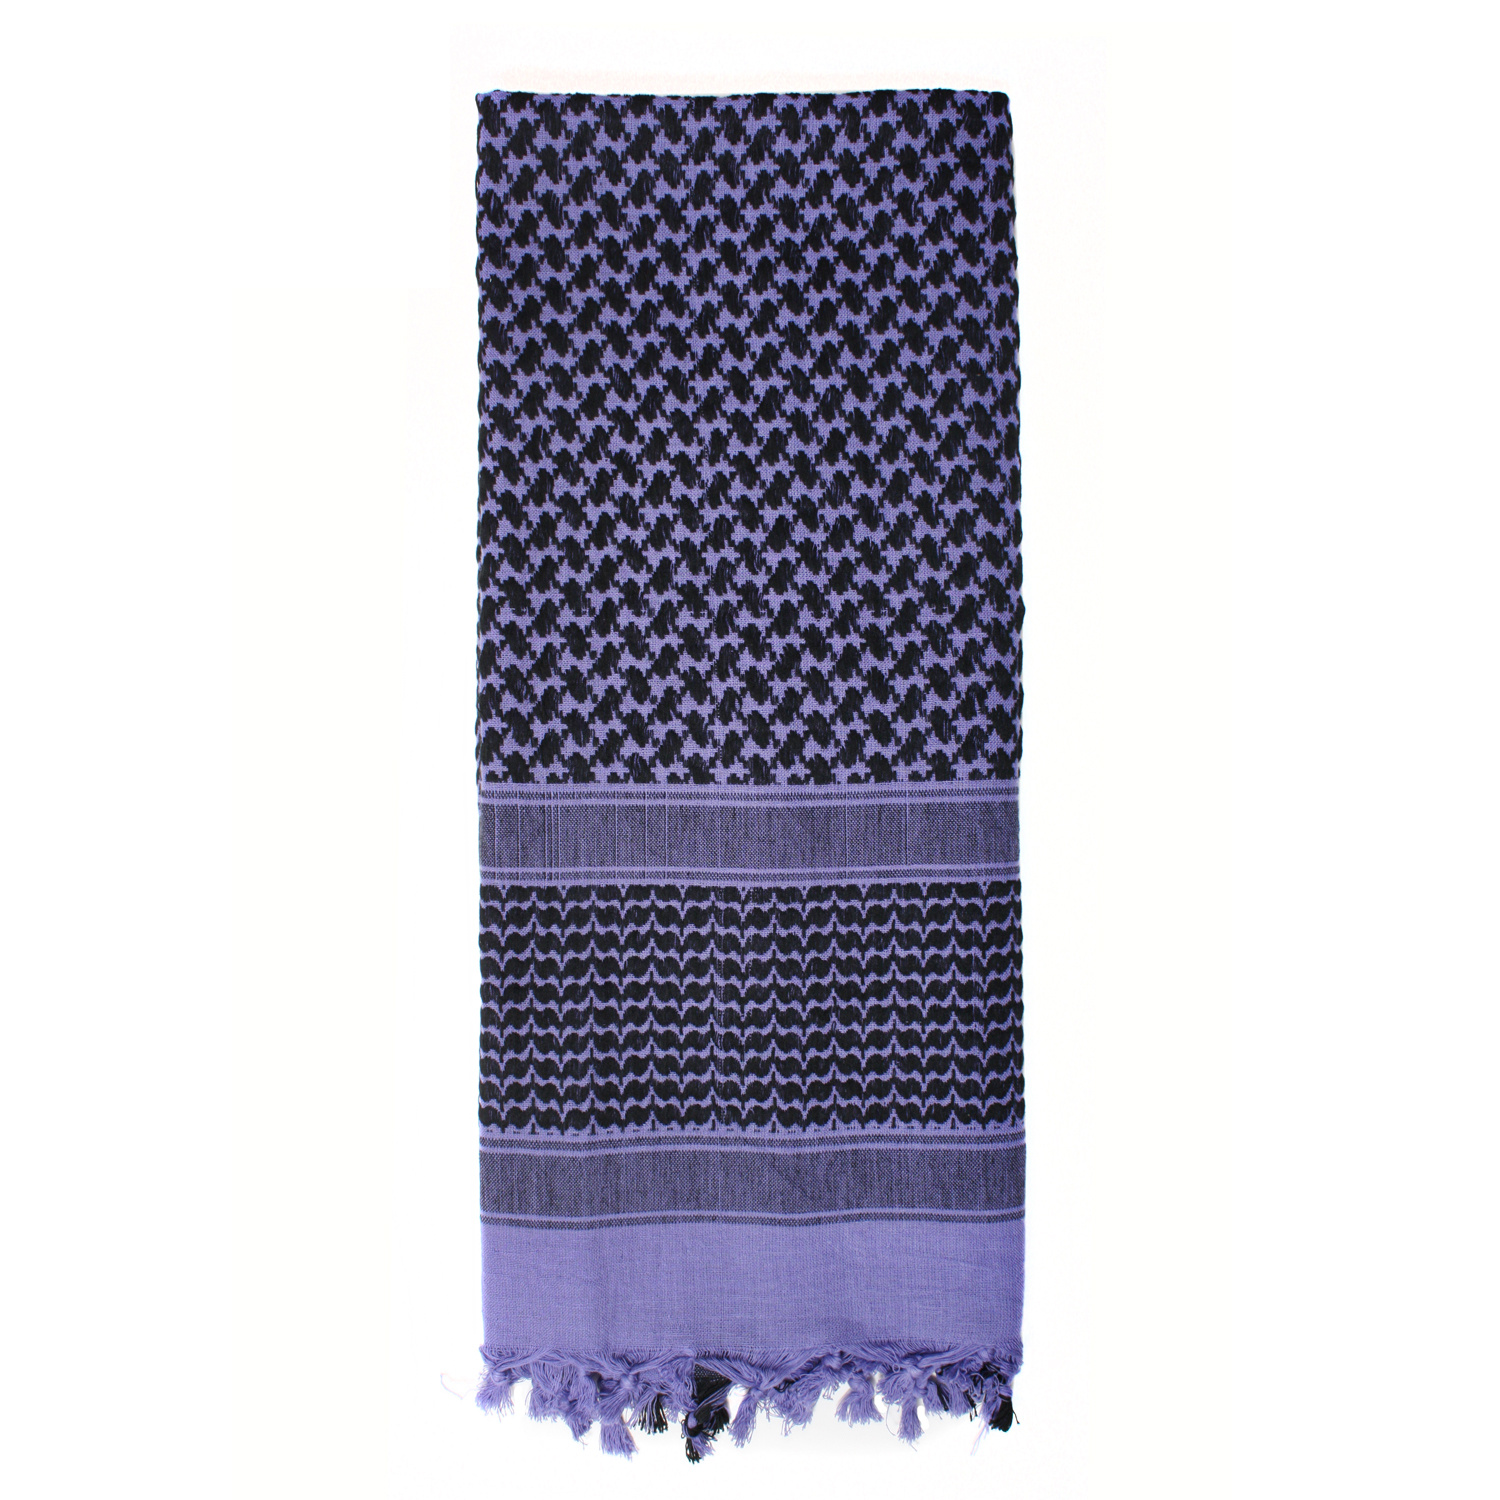 šátek Shemagh odlehčený fialový